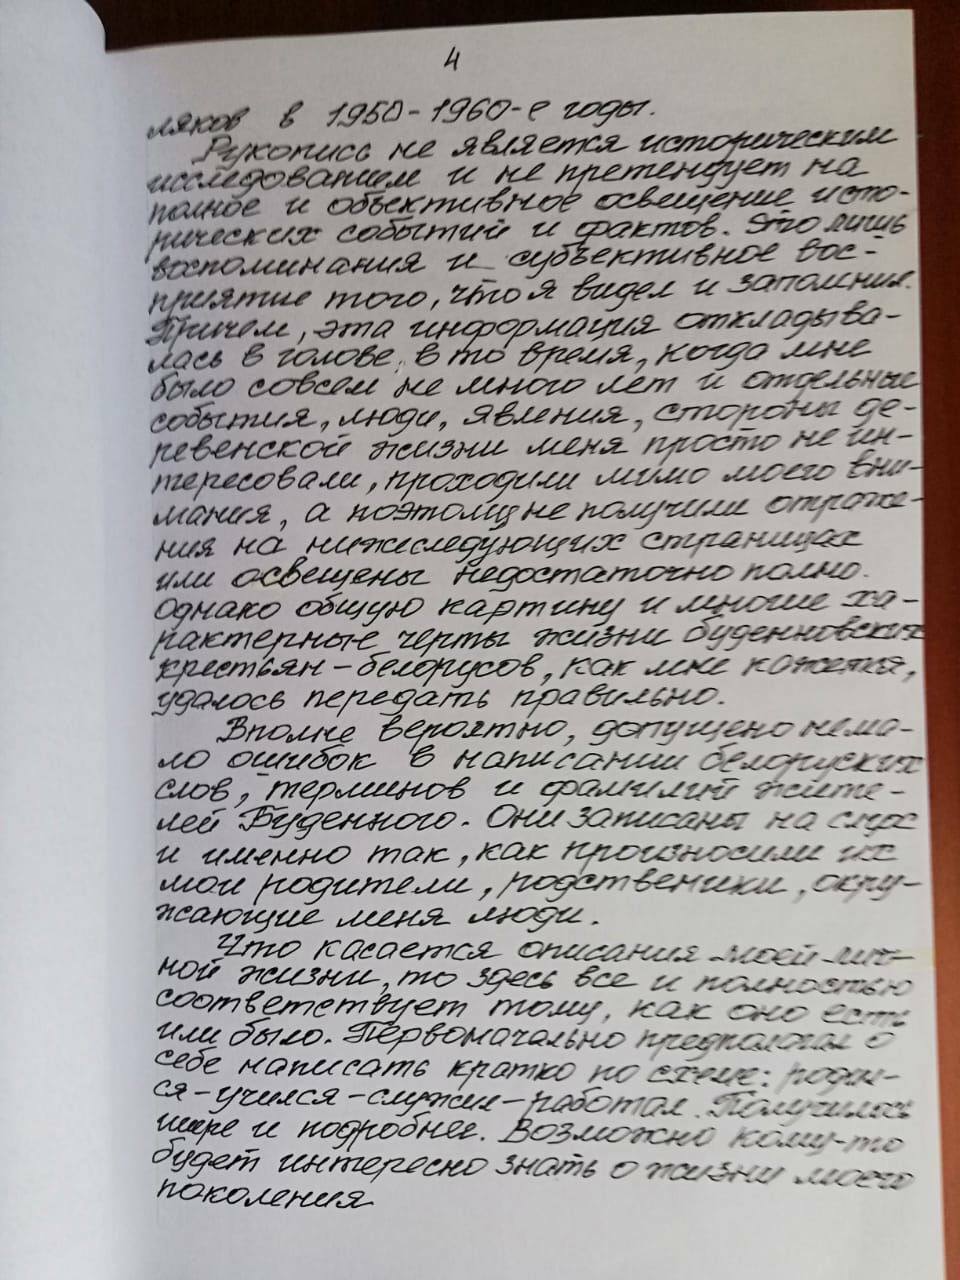 В Балтийской сельской библиотеке появилась уникальная рукописная книга историка Владимира Бычковского